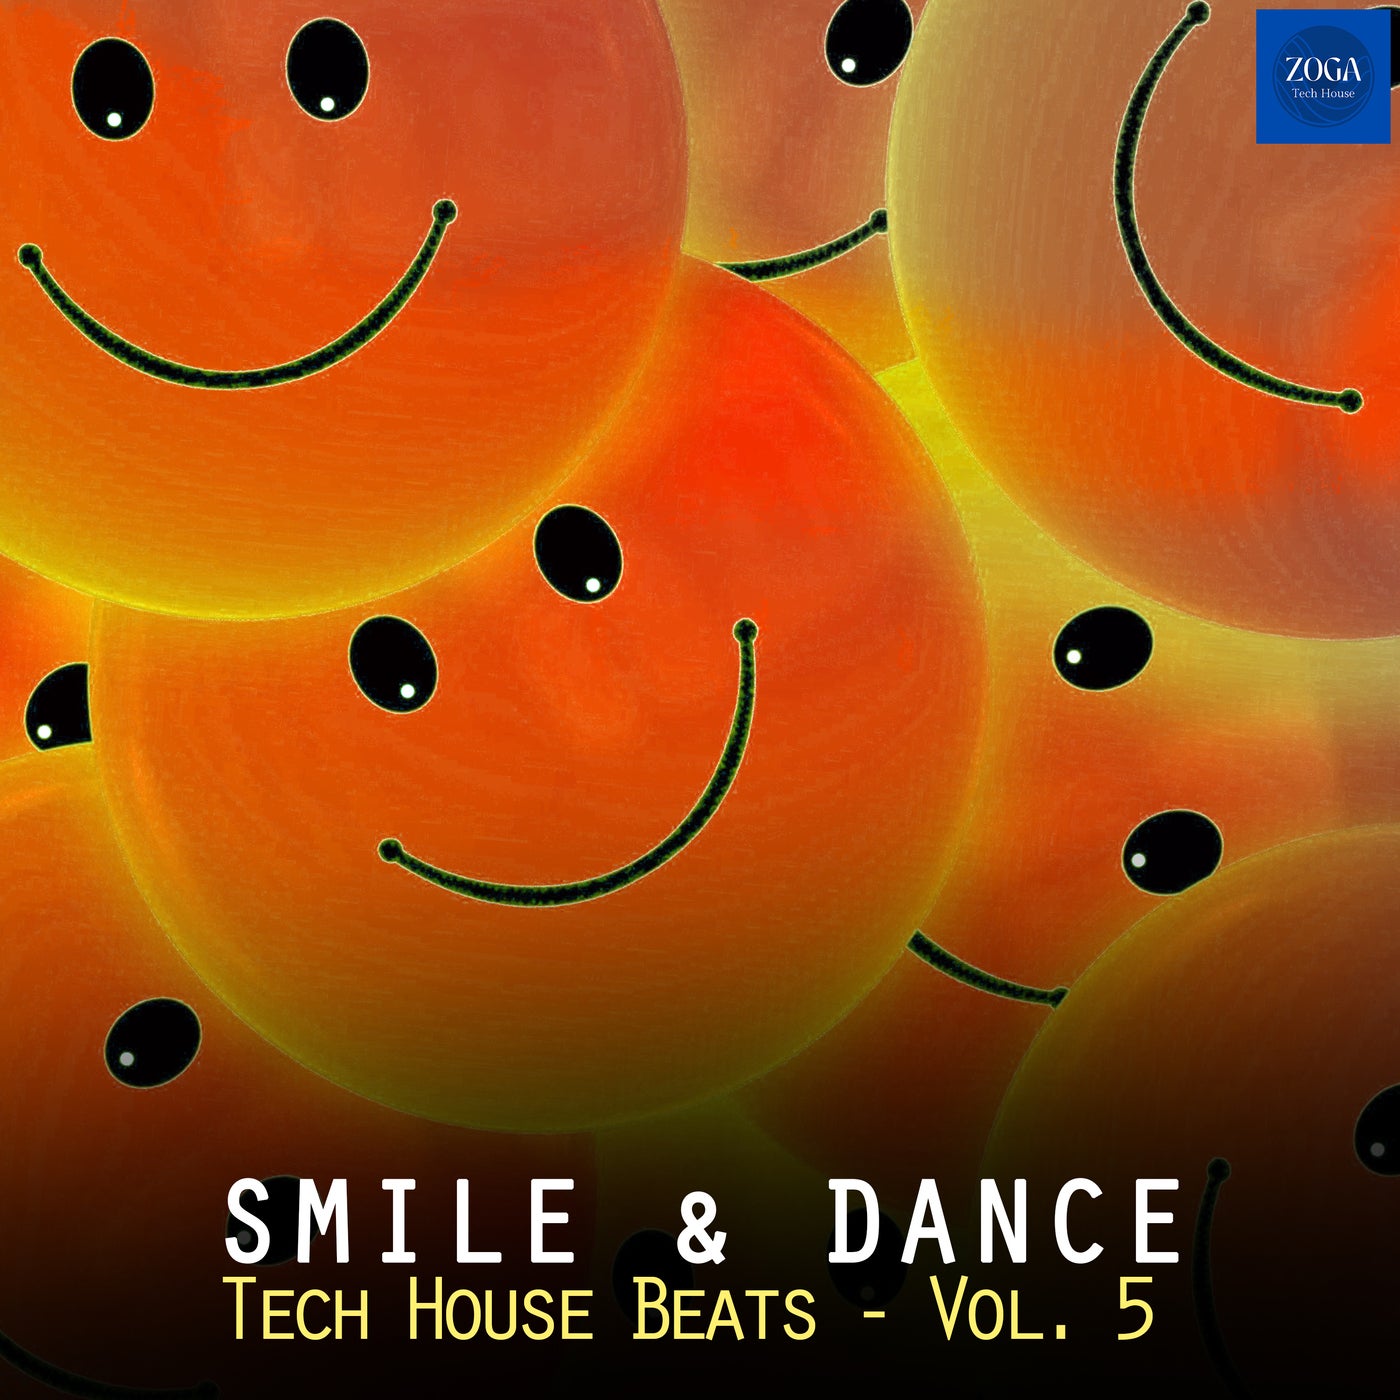 Smile & Dance Tech House Beats, Vol. 5